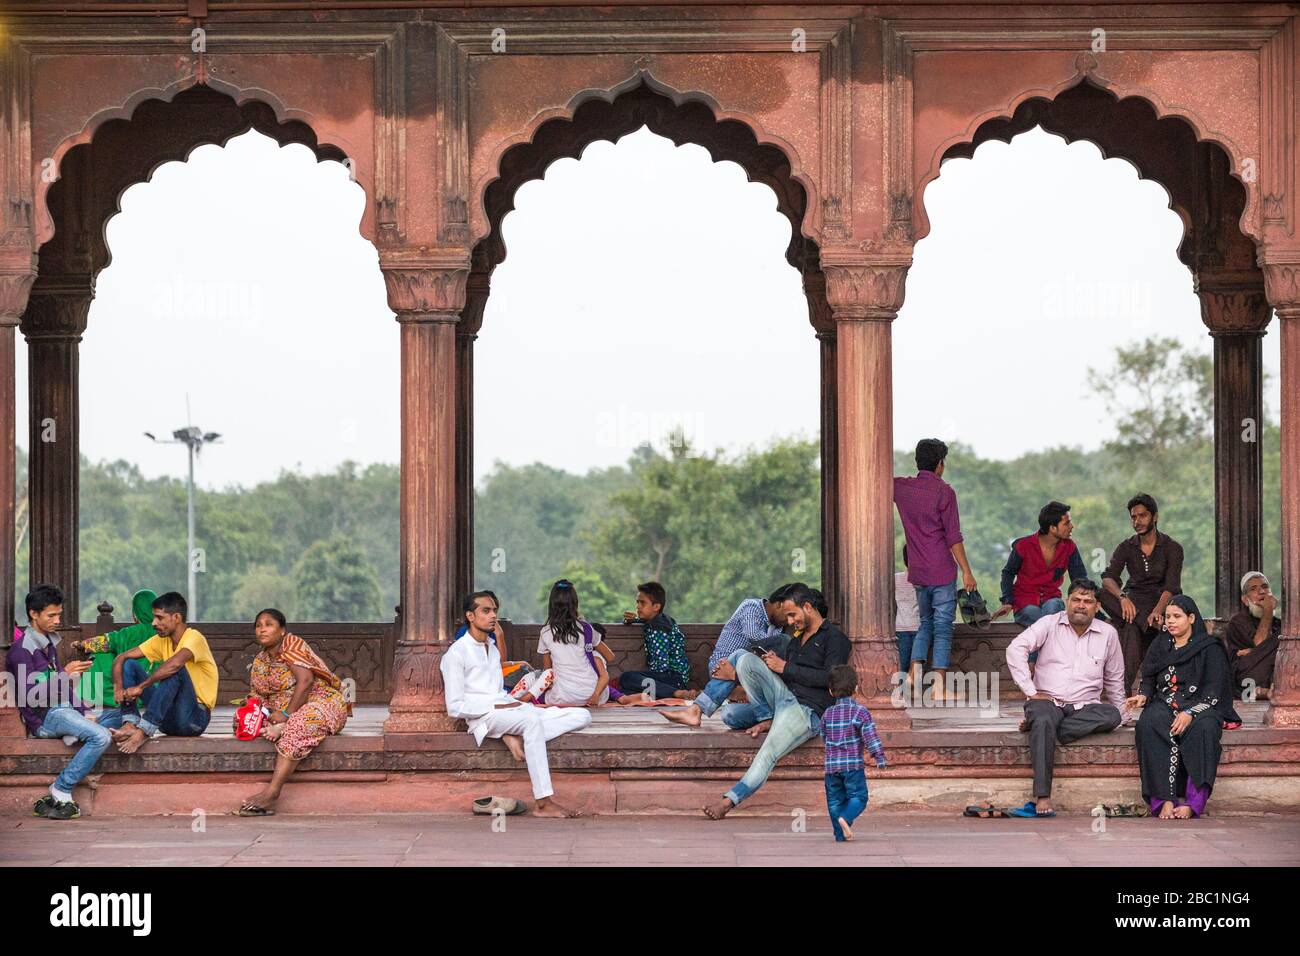 La gente del posto si rilassa sotto gli archi architettonici alla moschea di Jama Masjid nella Vecchia Delhi, India Foto Stock